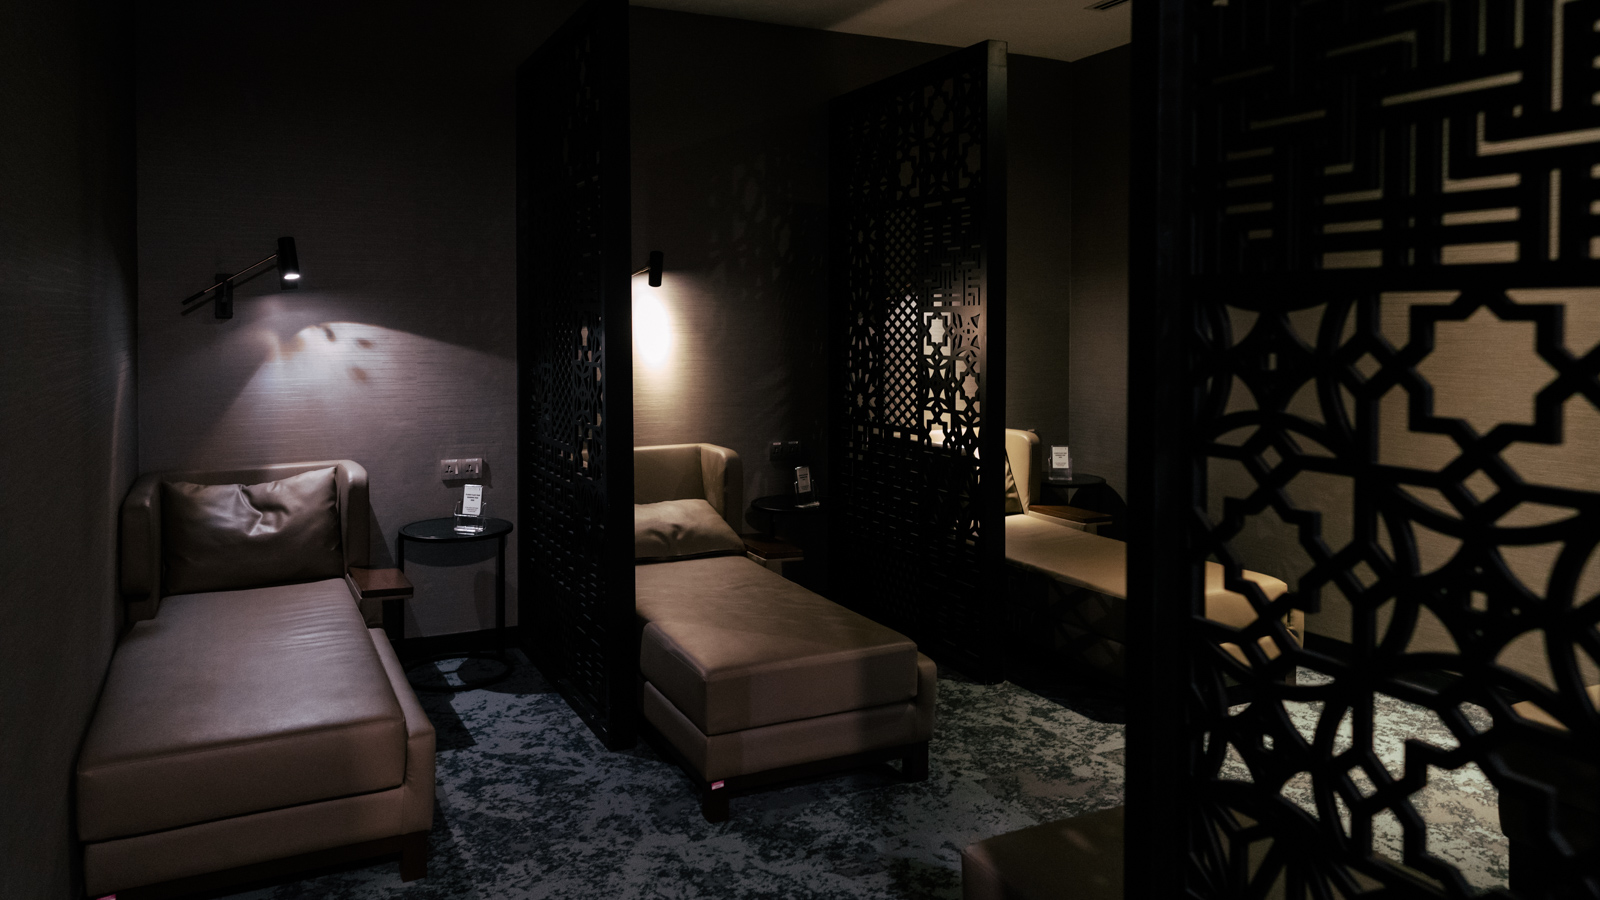 Malaysia Airlines Platinum Lounge quiet room